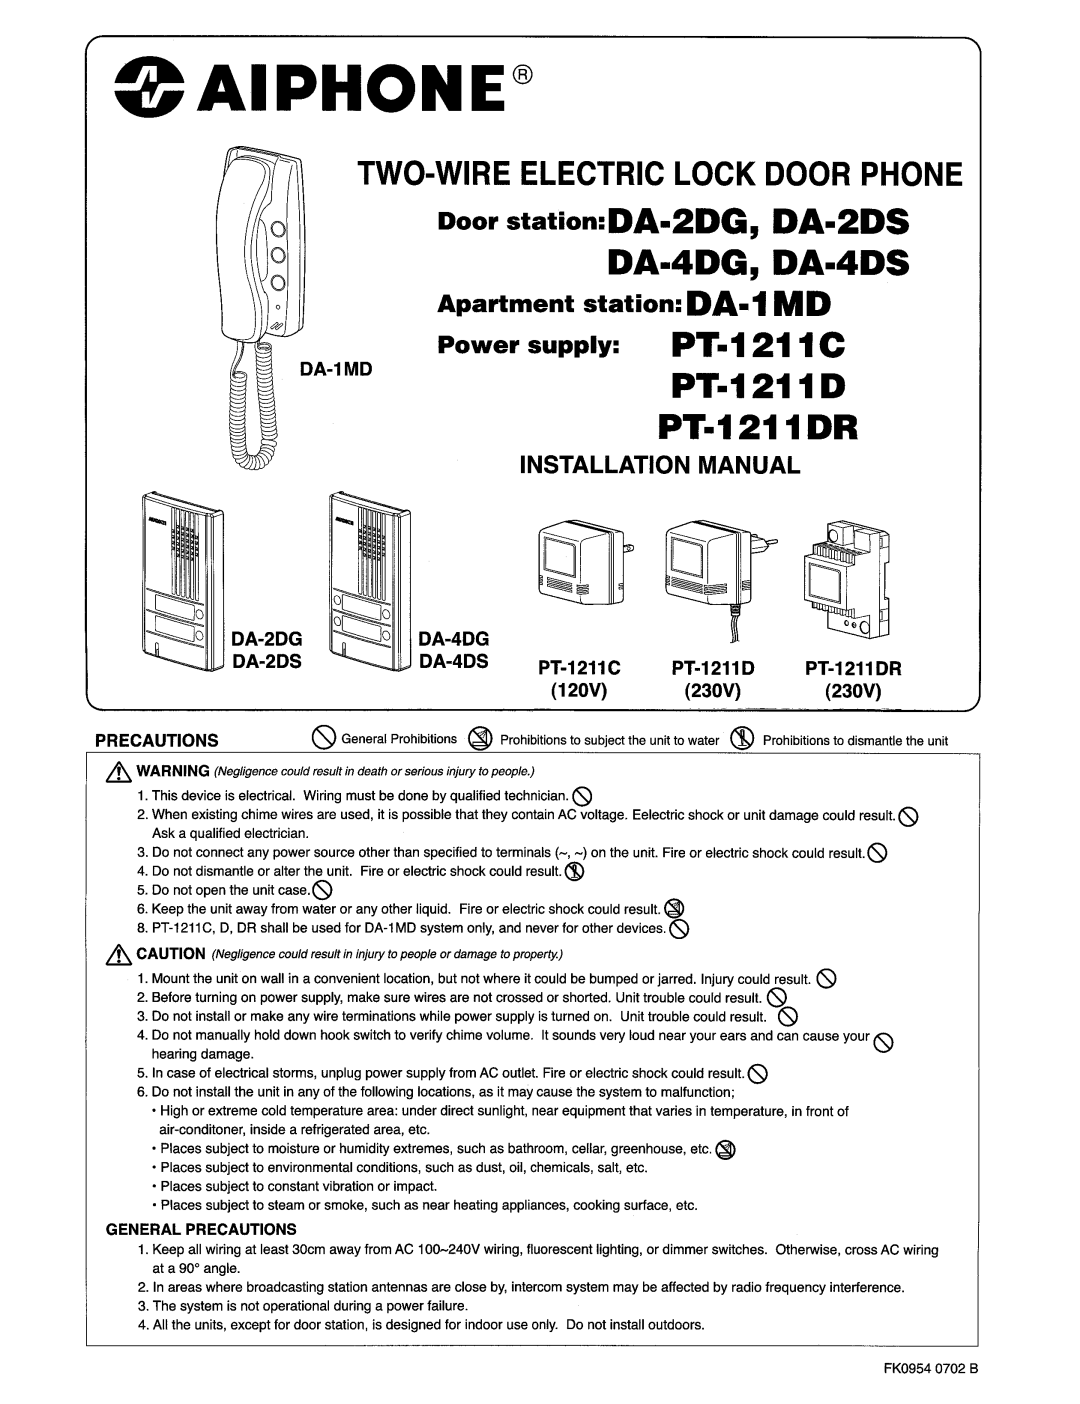 Aiphone DA-1MD manual 